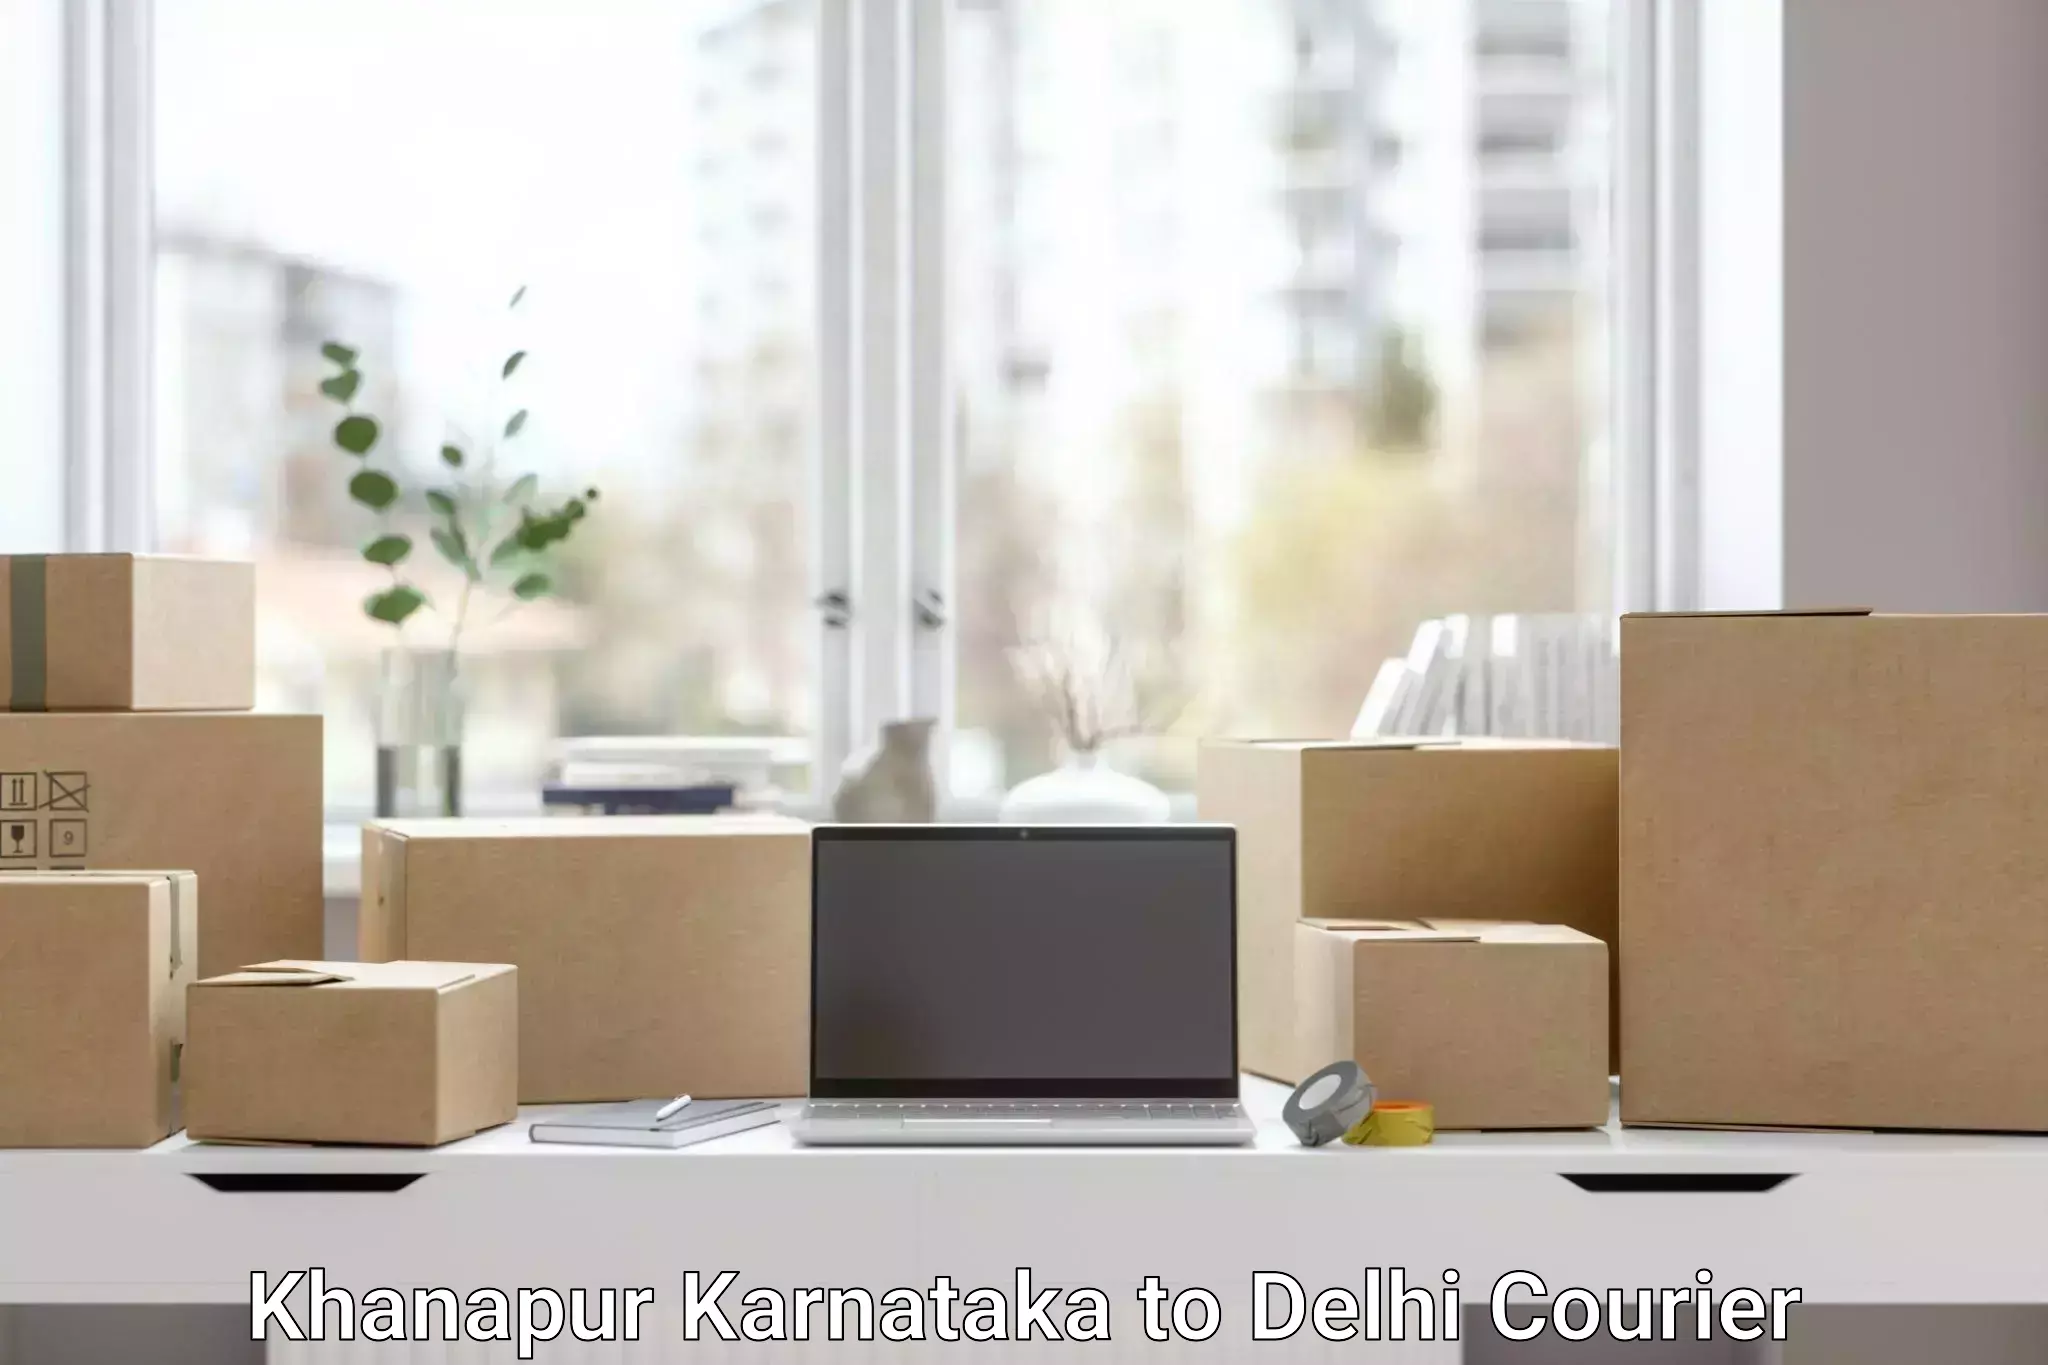 Bulk order courier Khanapur Karnataka to NIT Delhi